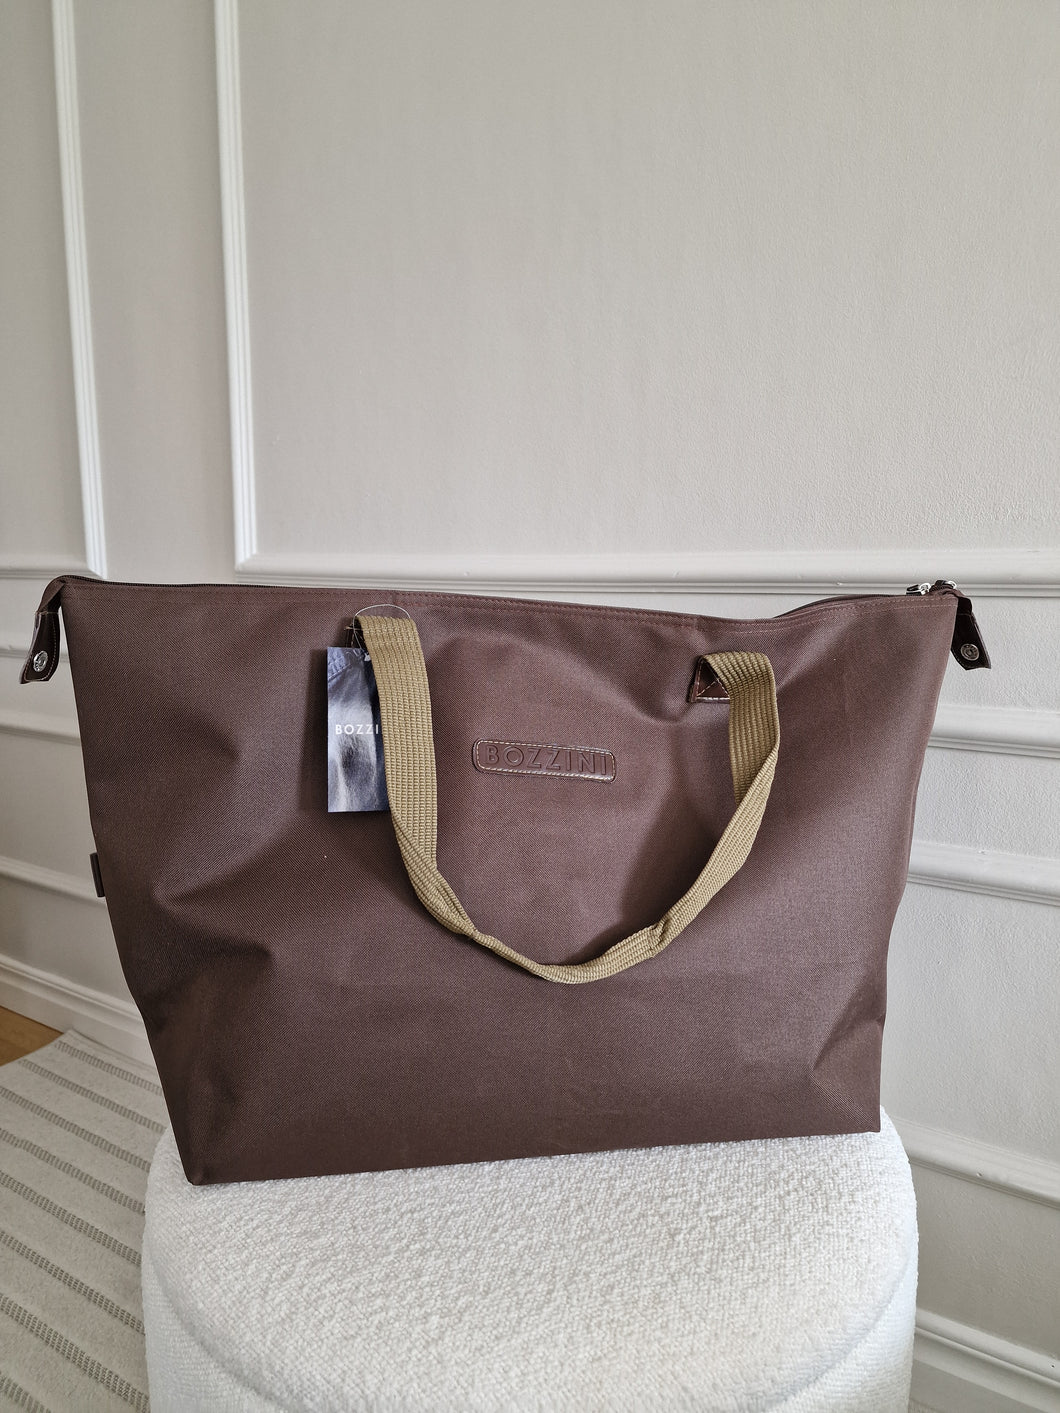 Bag BOZZINI brown with handle